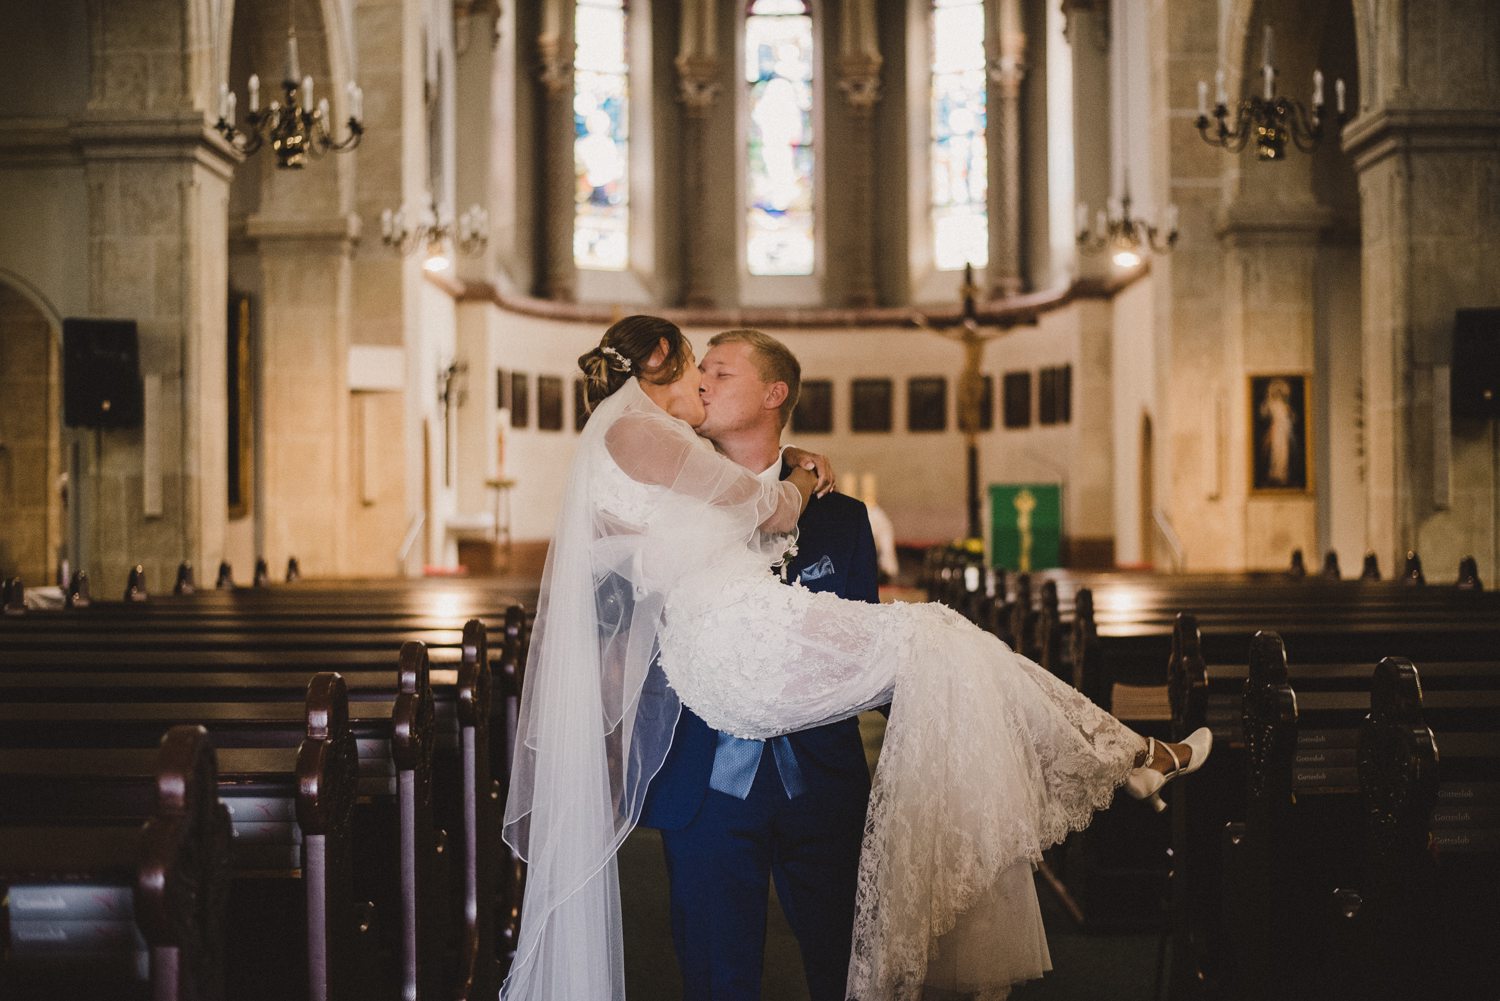 Für die Hochzeitsreportage küsst sich das Brautpaar in der Kirche